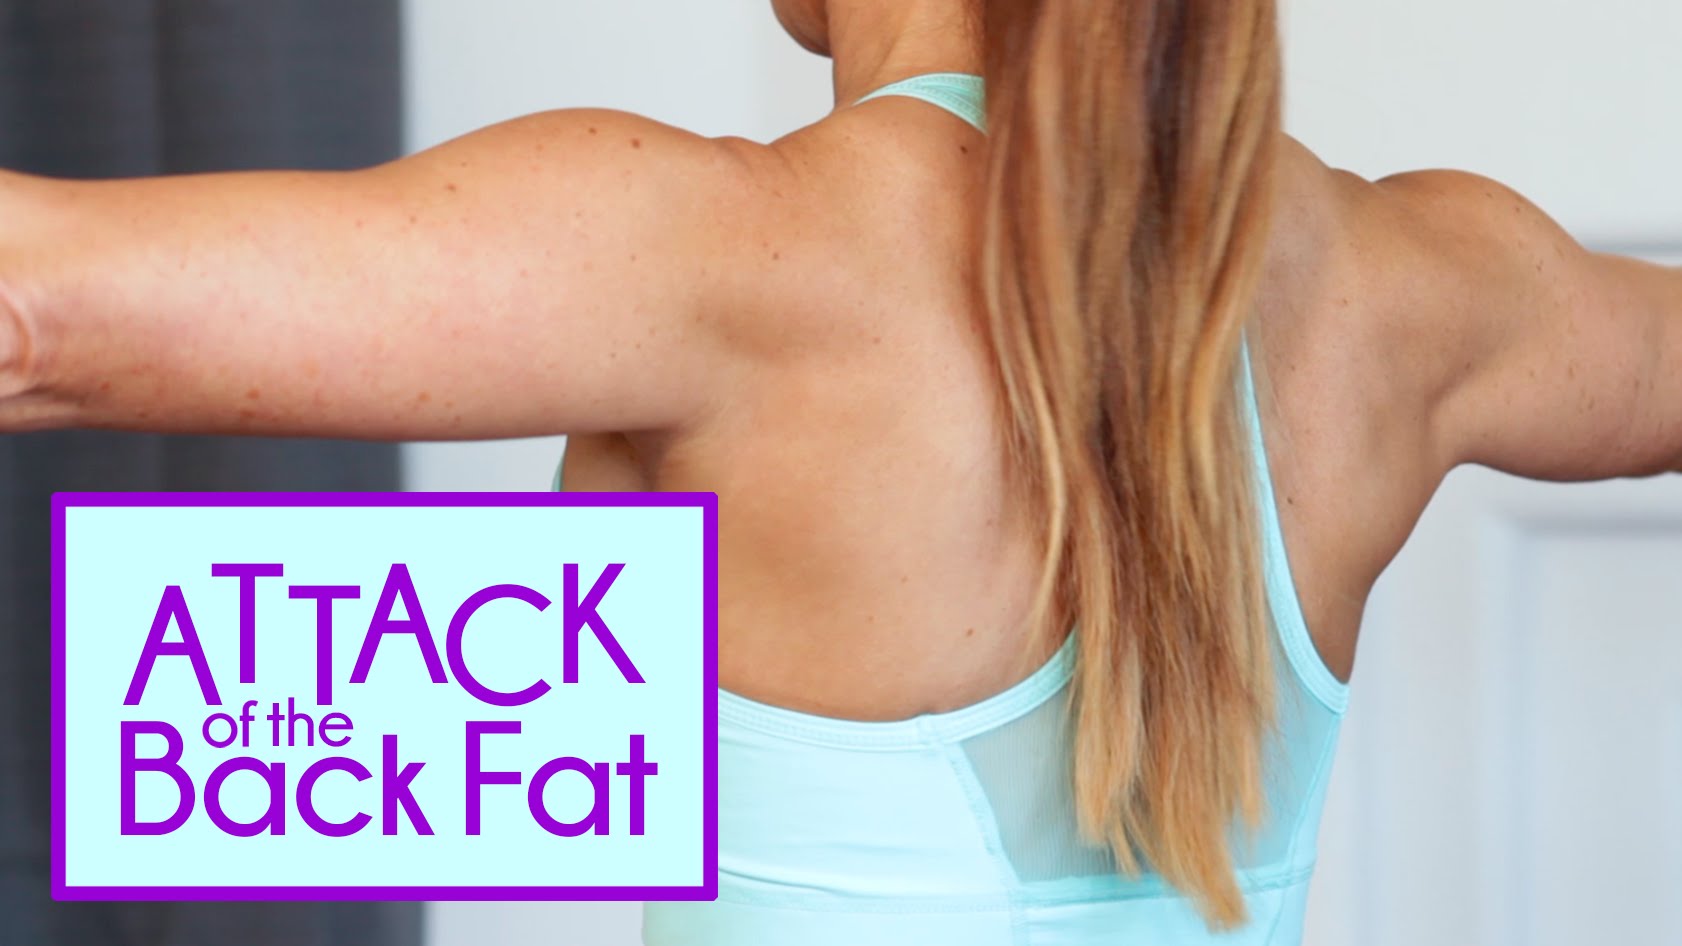 How to Burn Back Fat & Bra Bulge, 4 Best Exercises